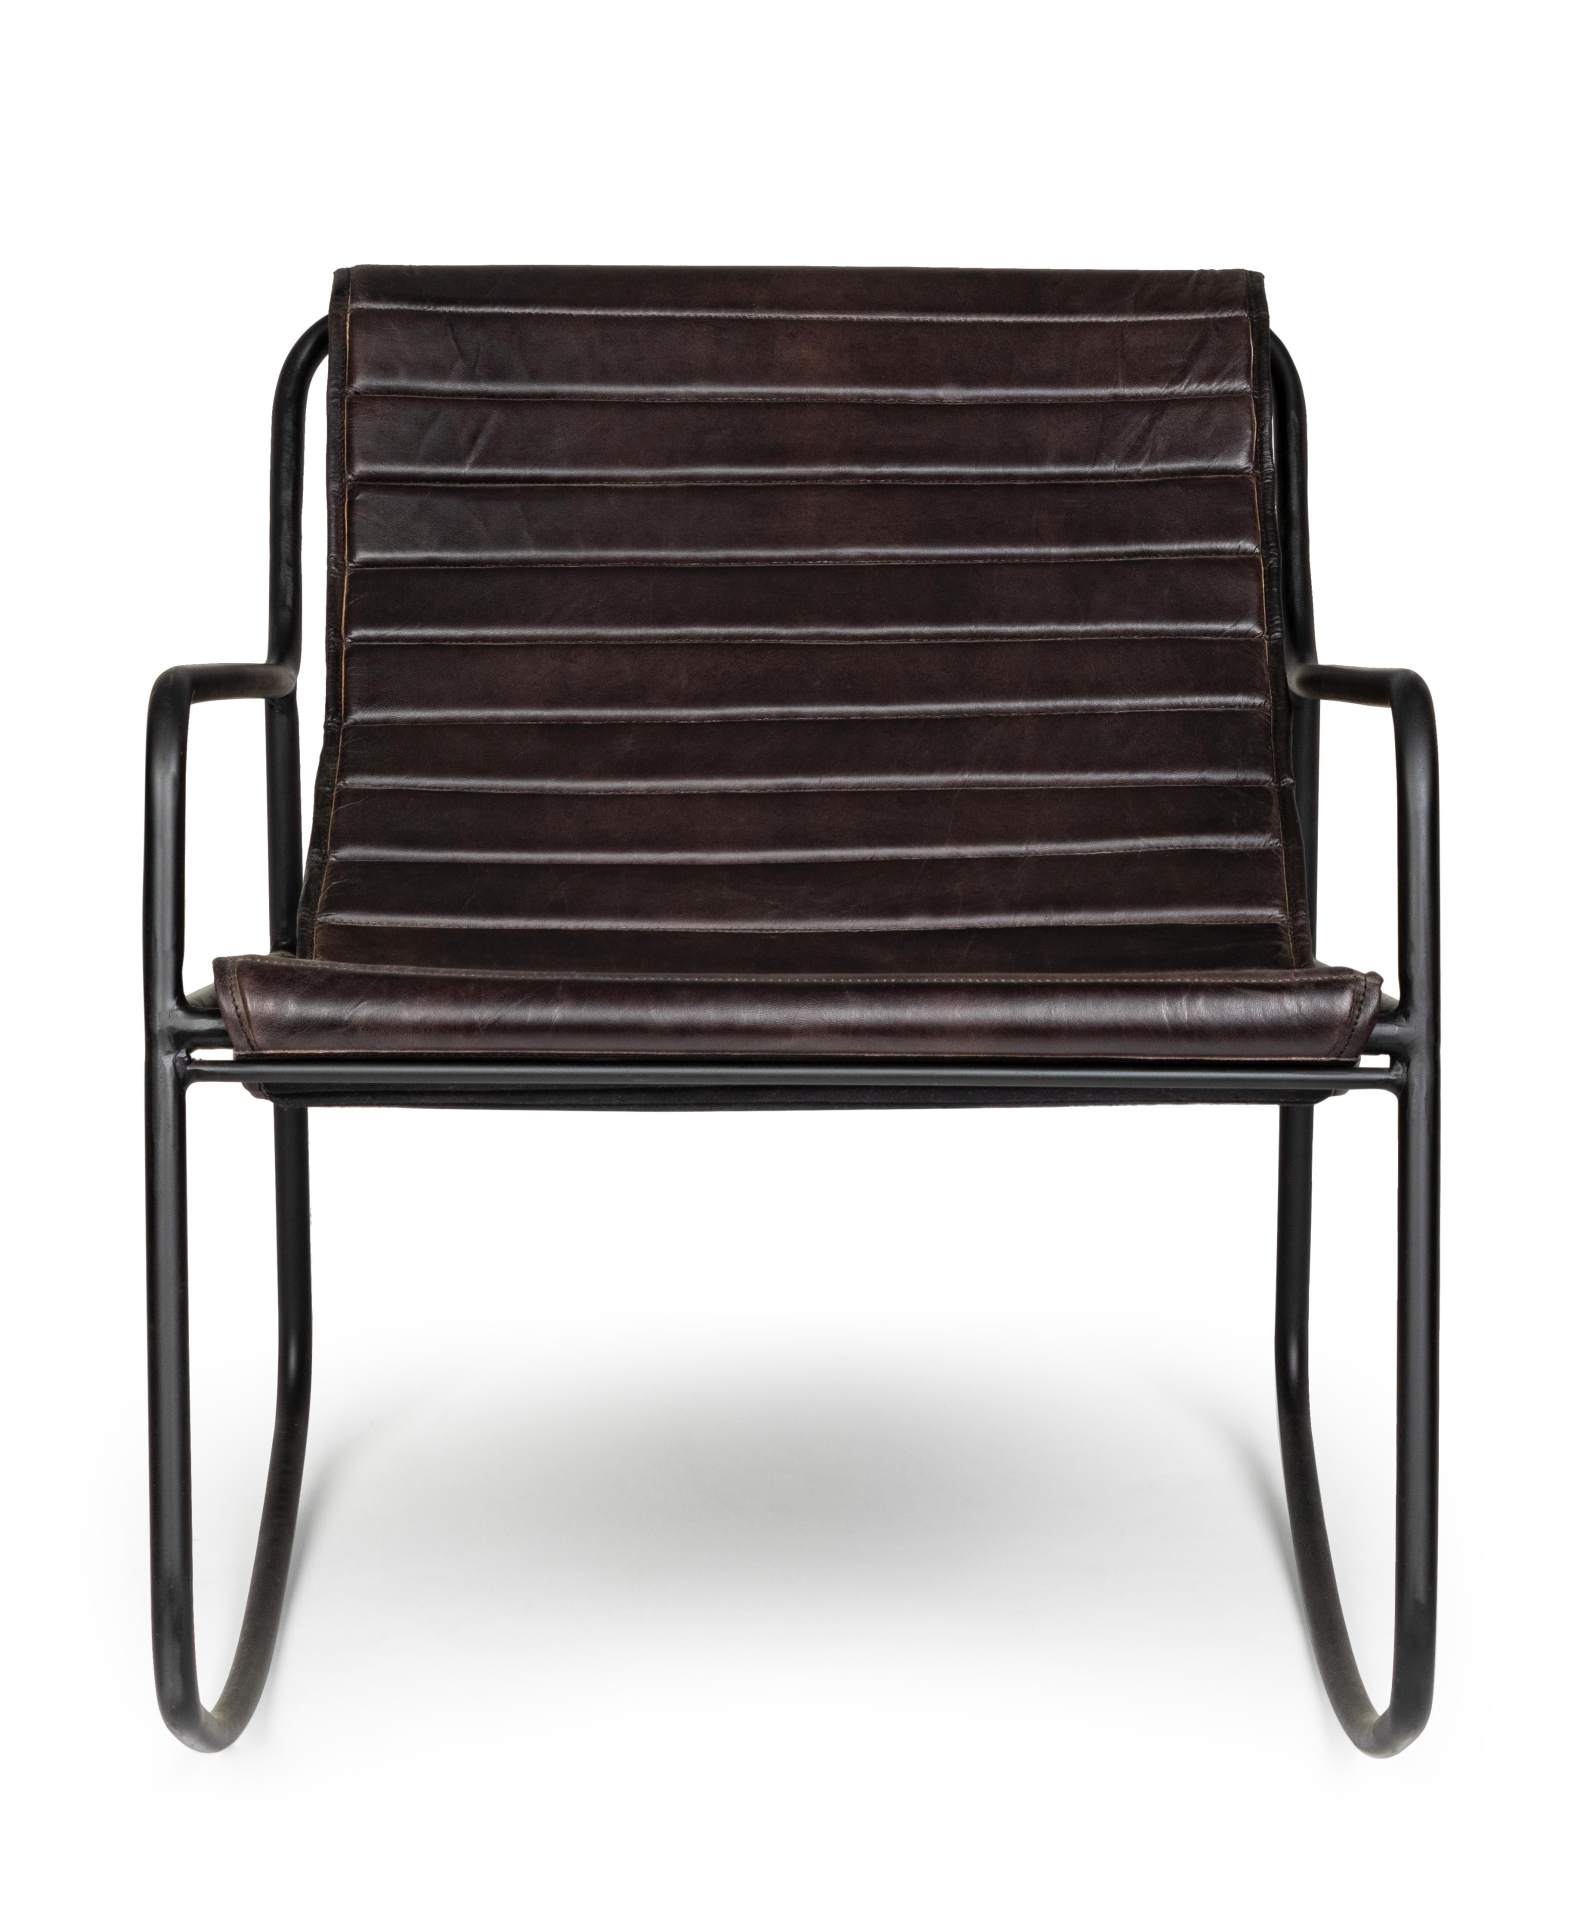 Der Sessel Karisma überzeugt mit seinem klassischen Design. Gefertigt wurde er aus Leder, welches einen schwarzen Farbton besitzt. Das Gestell ist aus Metall und hat eine schwarze Farbe. Der Sessel besitzt eine Sitzhöhe von 44 cm. Die Breite beträgt 59 cm